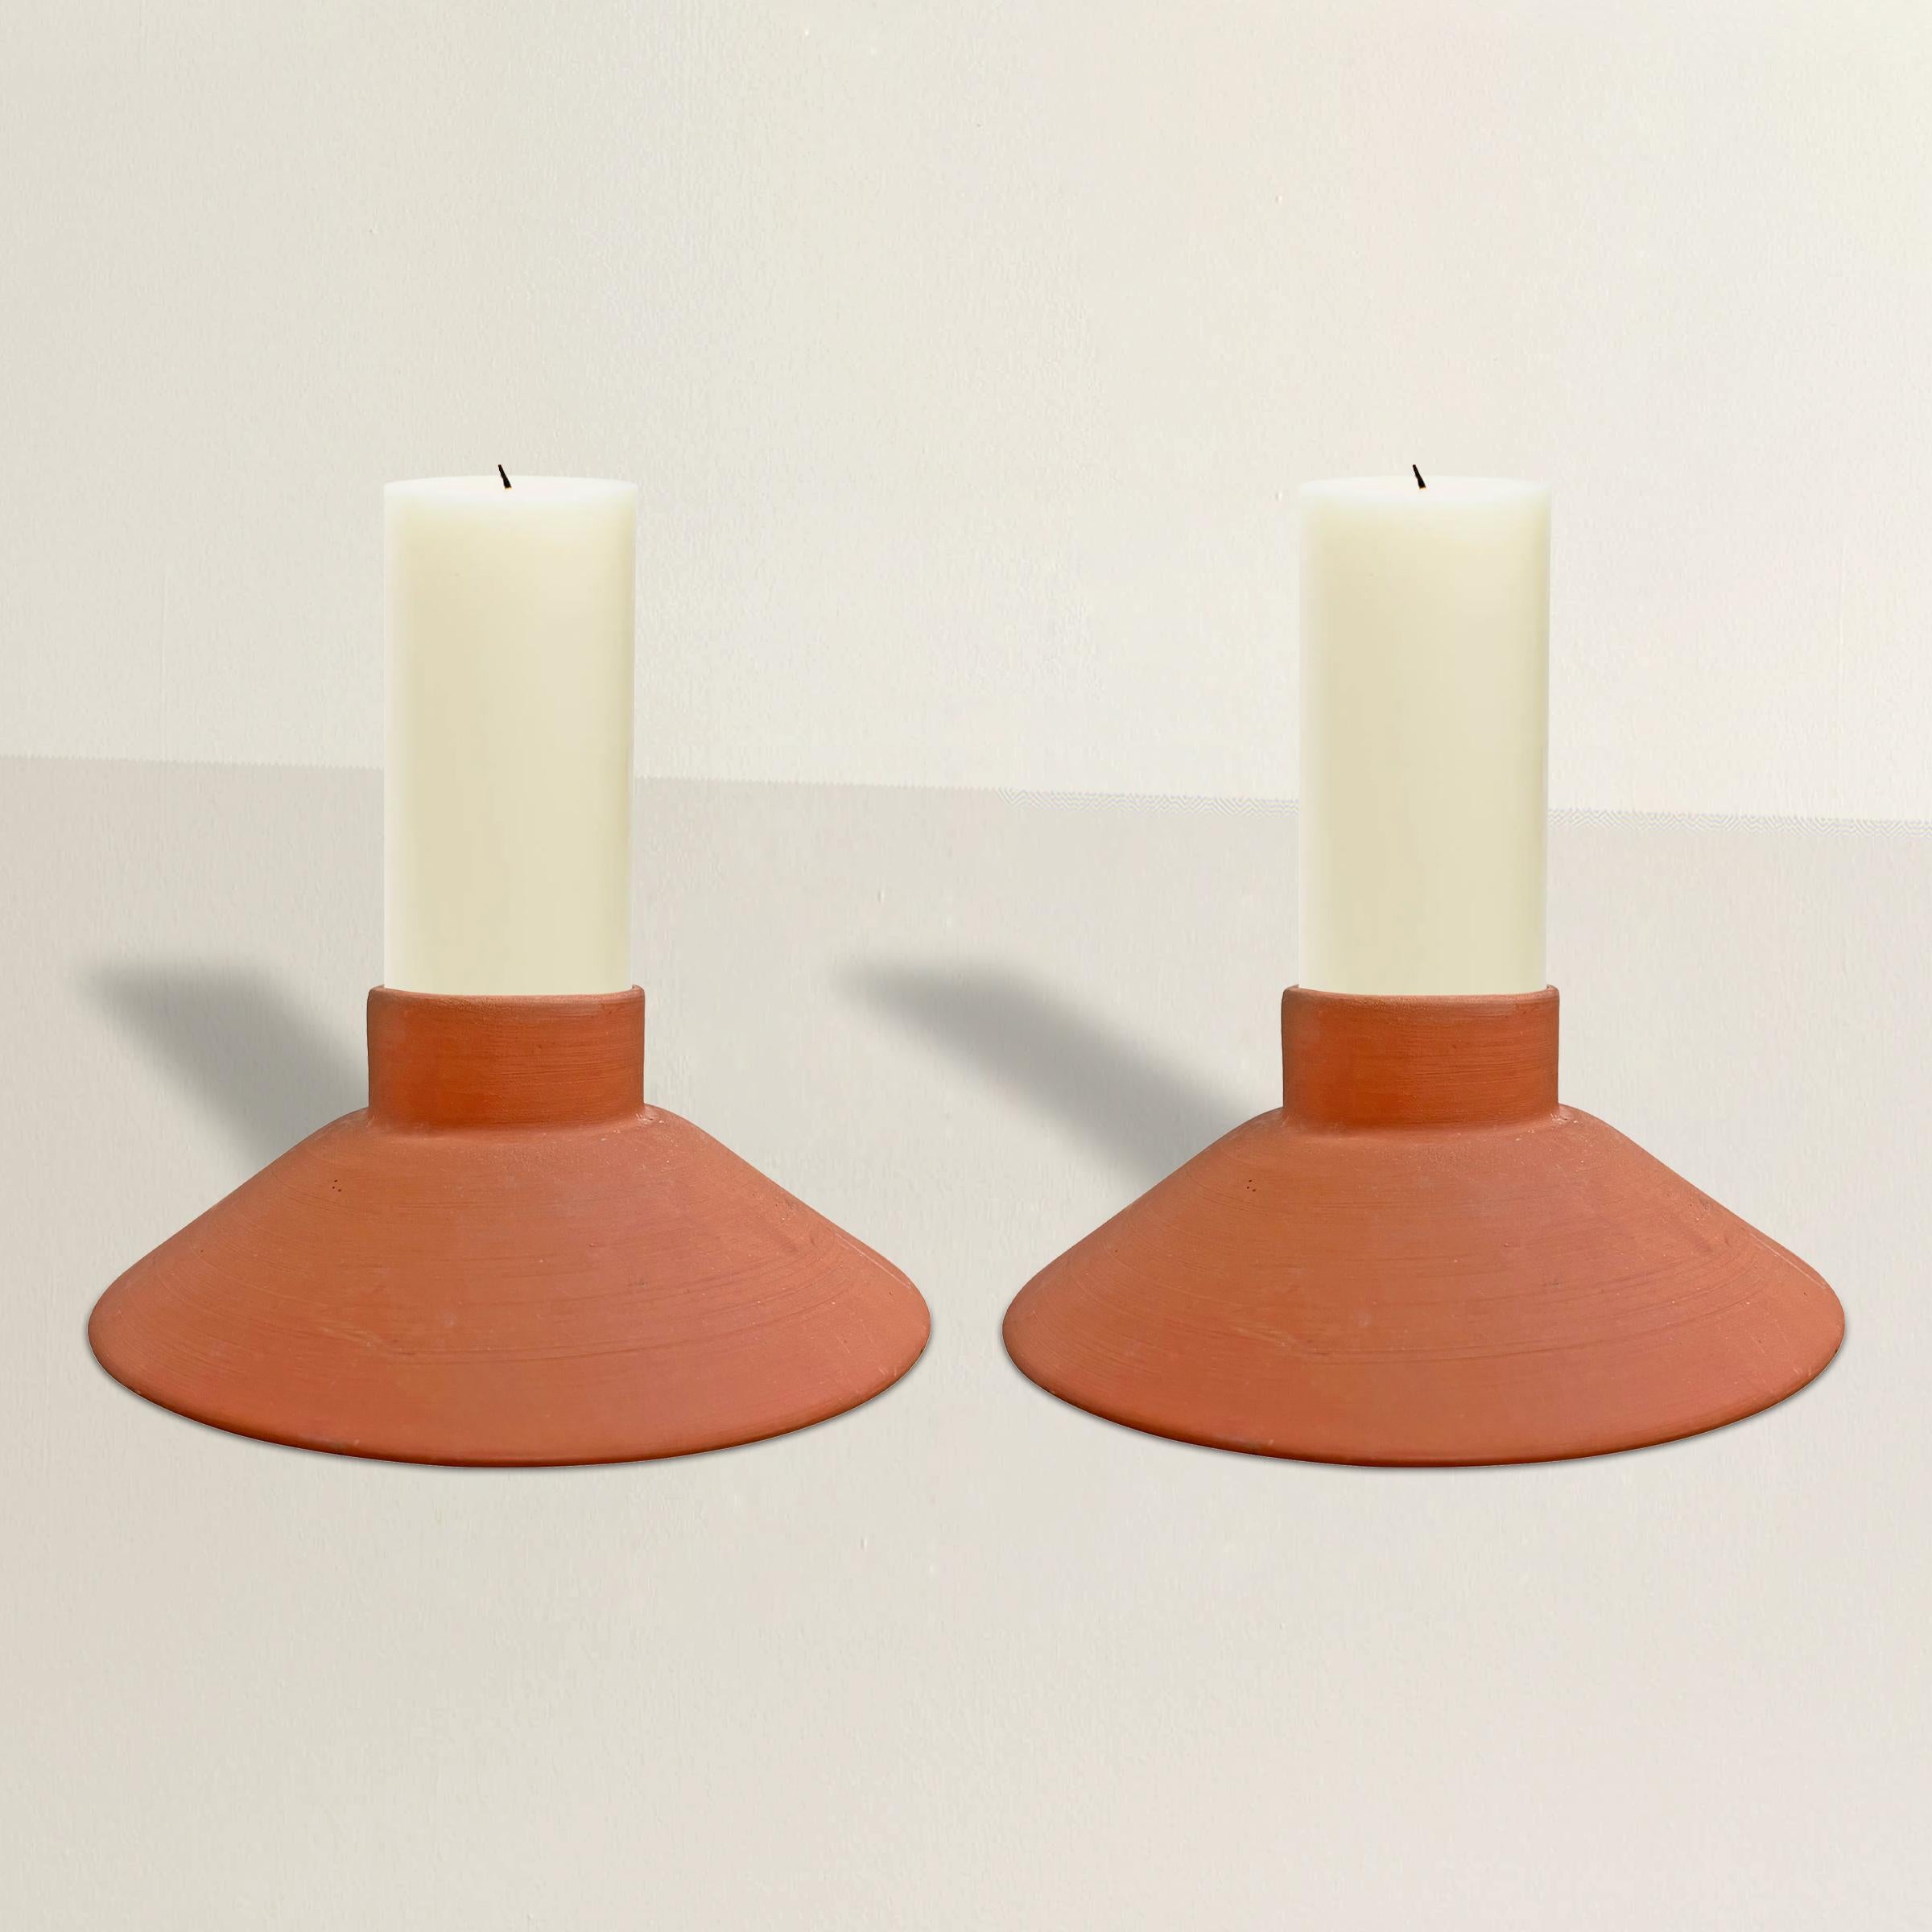 Ein schickes Paar Terrakotta-Kerzenhalter im Vintage-Stil mit einer einfachen, konischen Form, die sich nahtlos in jeden Einrichtungsstil einfügt.  Verwenden Sie sie auf dem Esstisch, dem Couchtisch, der Eingangskonsole oder bedecken Sie sie mit